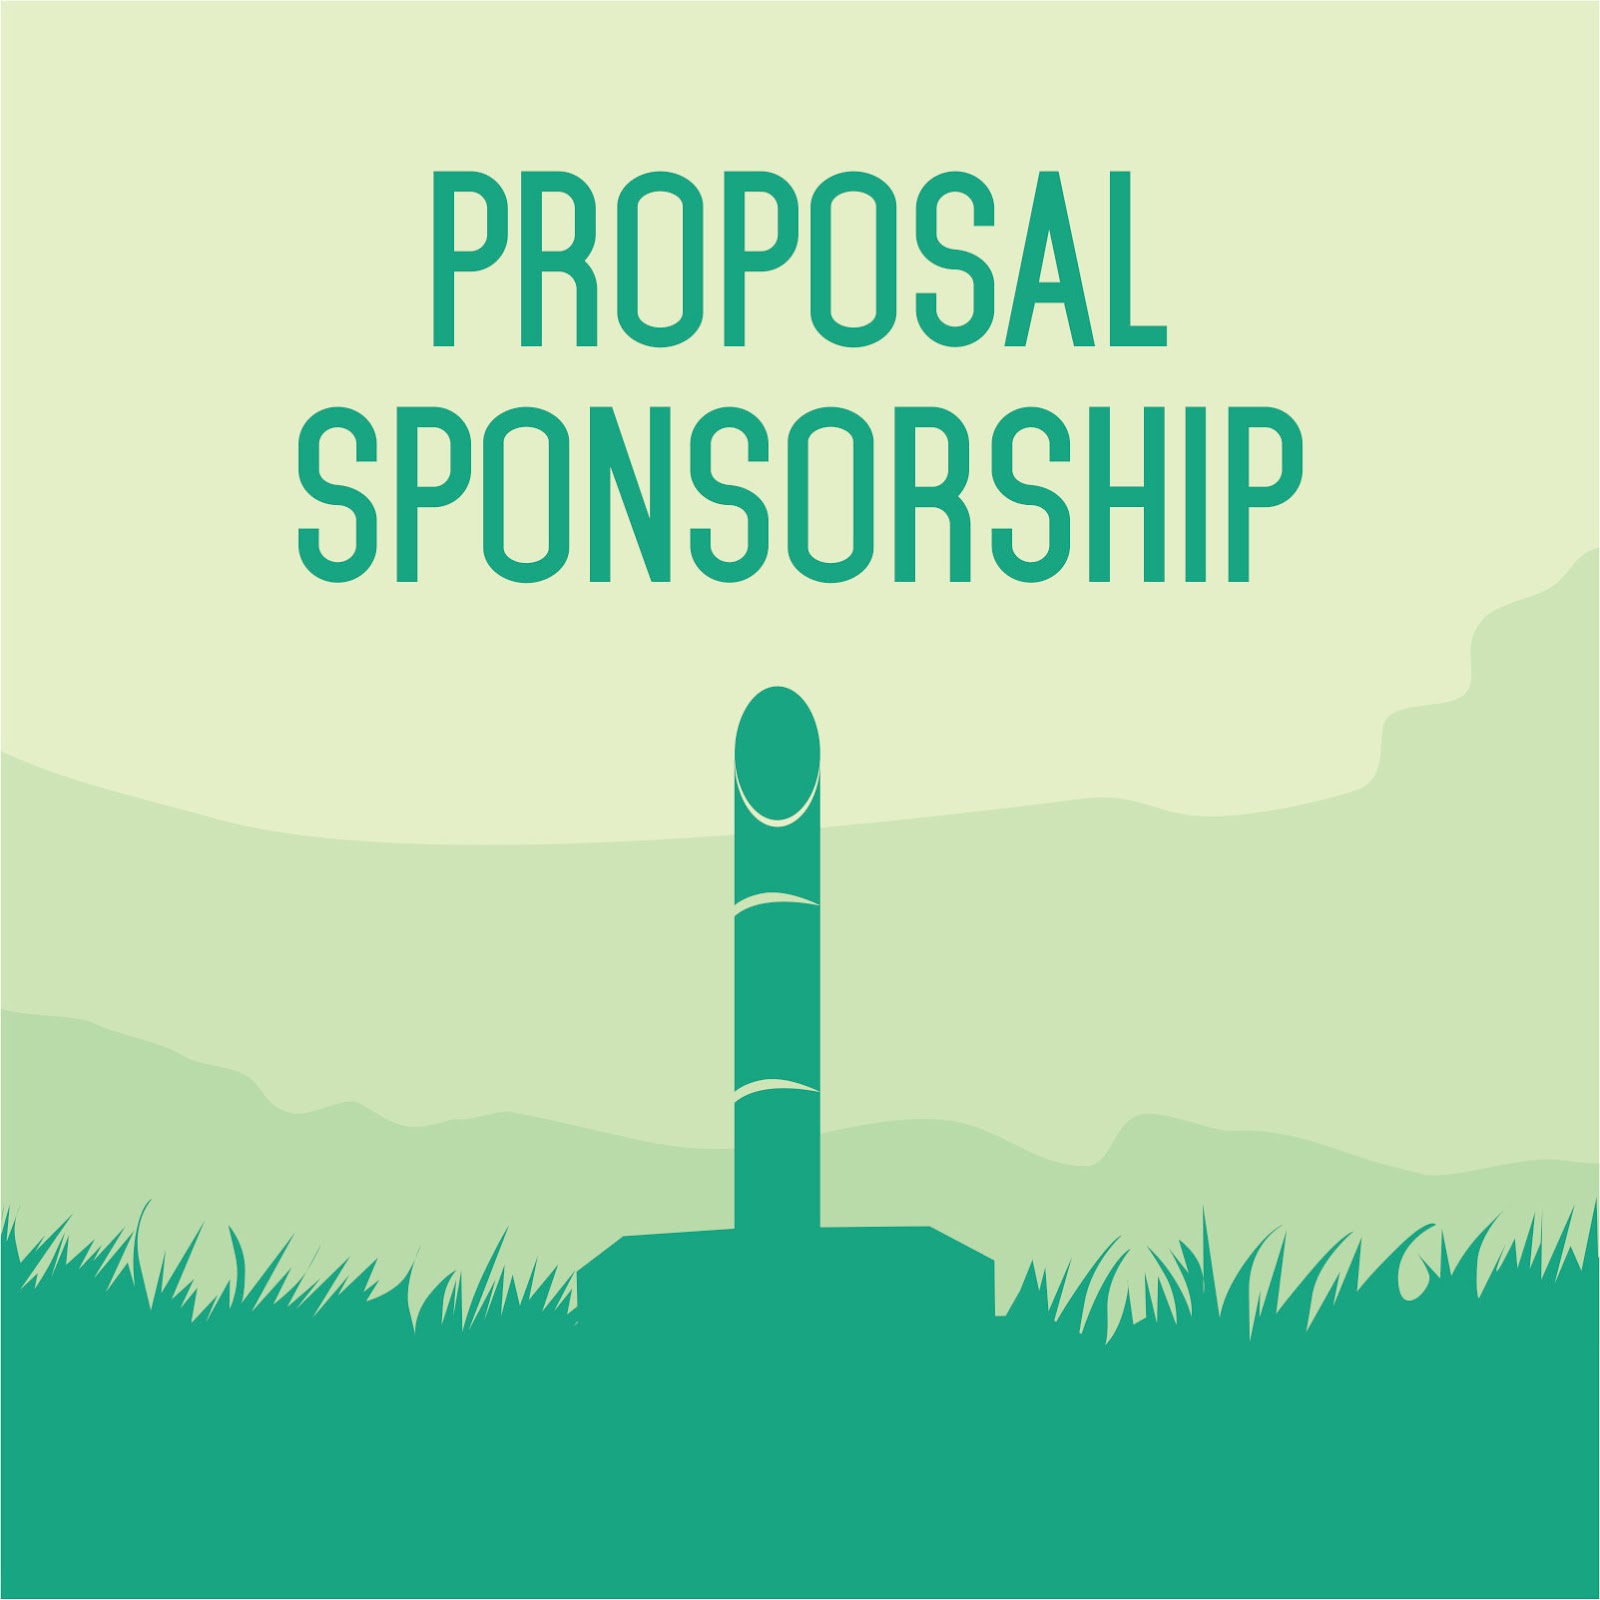 Download Contoh Proposal Sponsorship Versi PDF dan CDR 